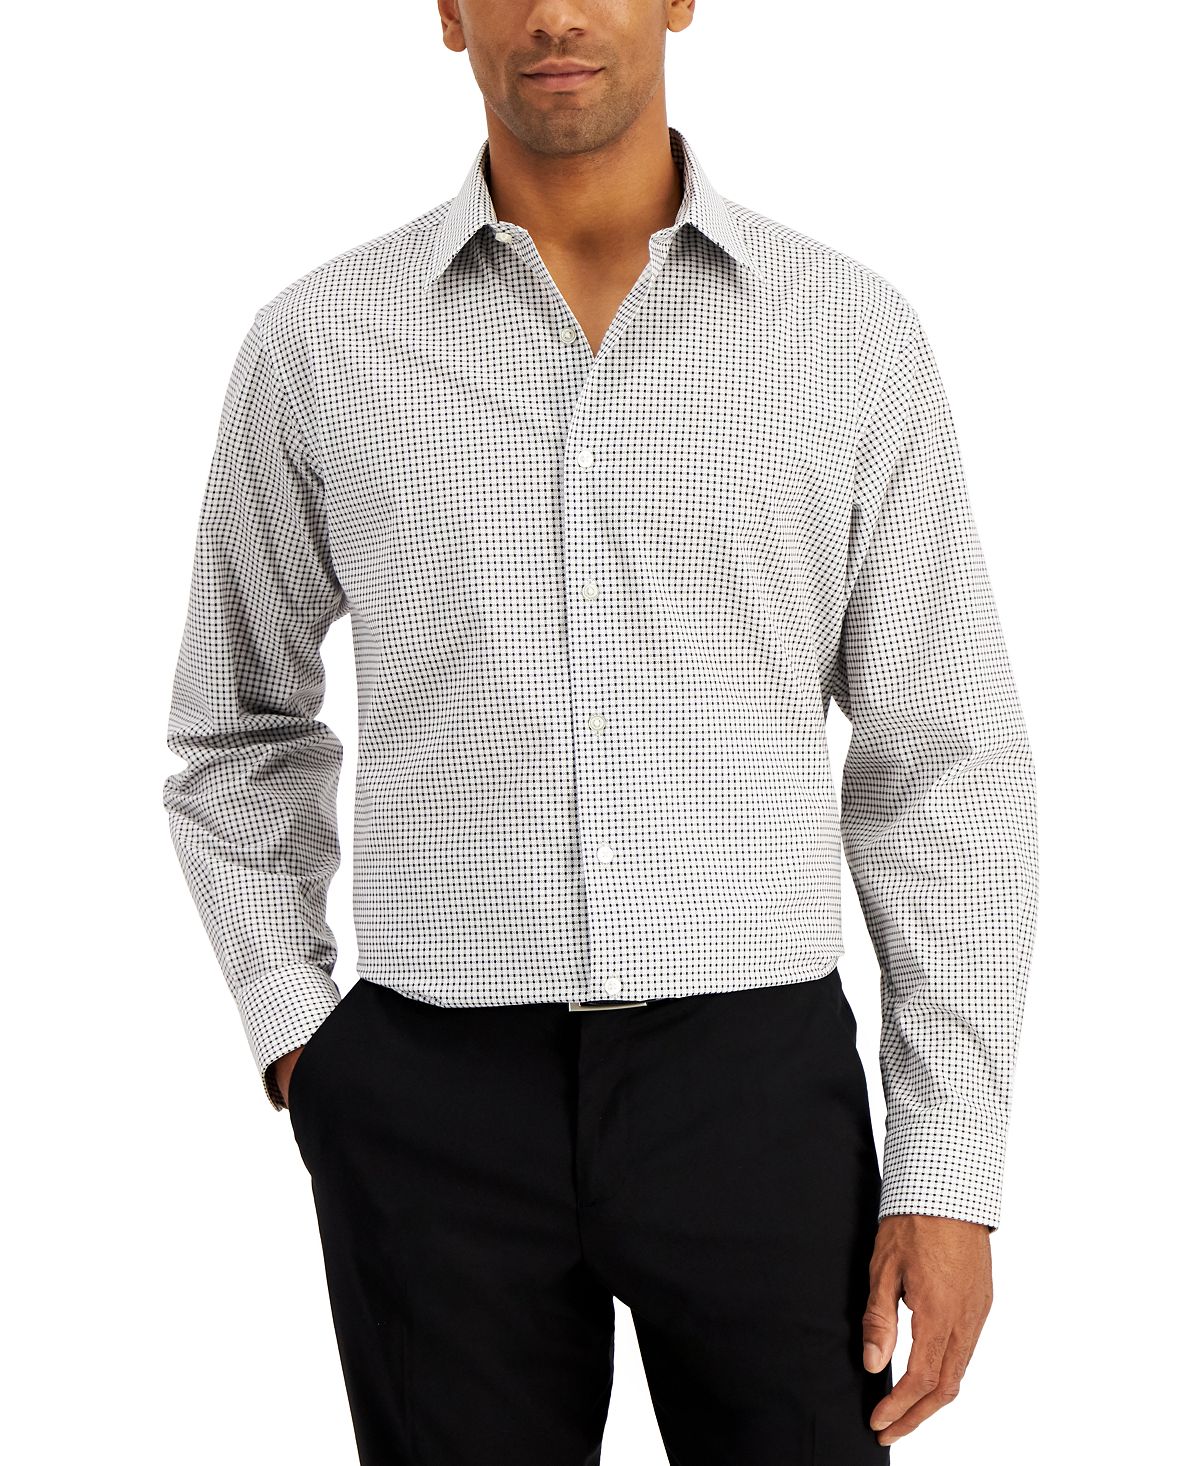 Мужская рубашка классического кроя в клетку, созданная для macy's Club Room, черный